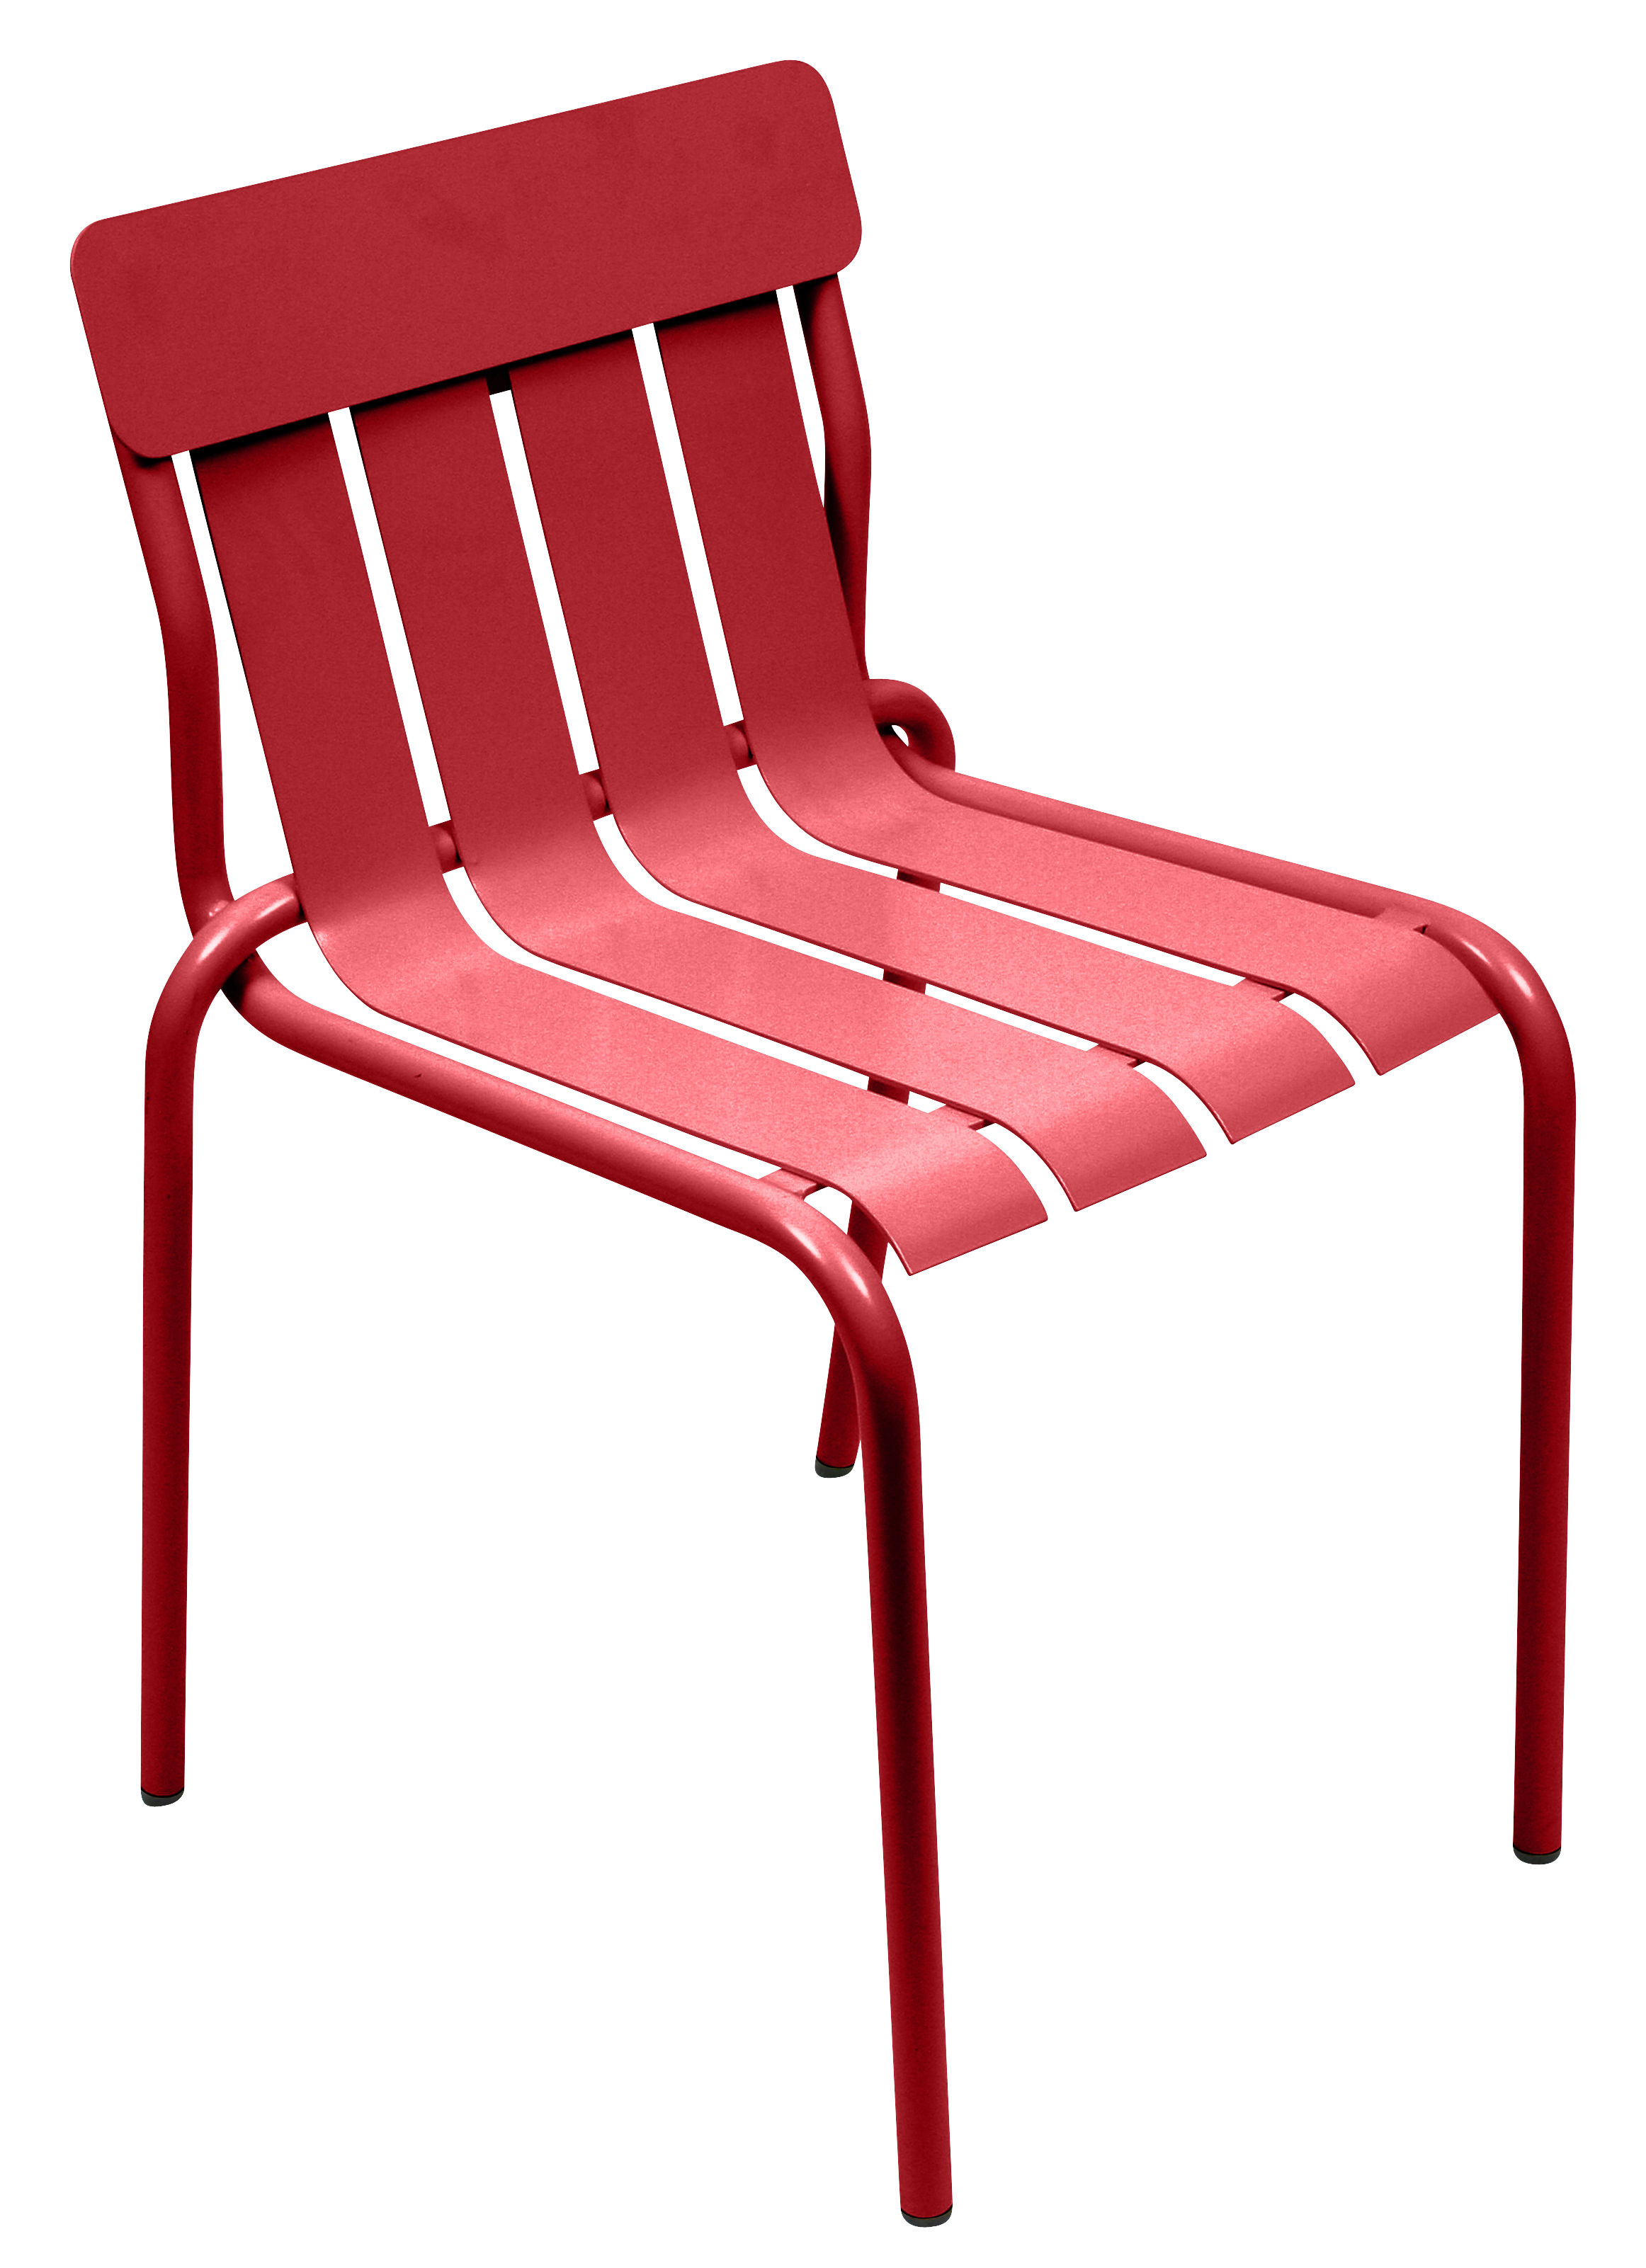 Chaise empilable Stripe / Par Matali Crasset - Fermob rouge en métal